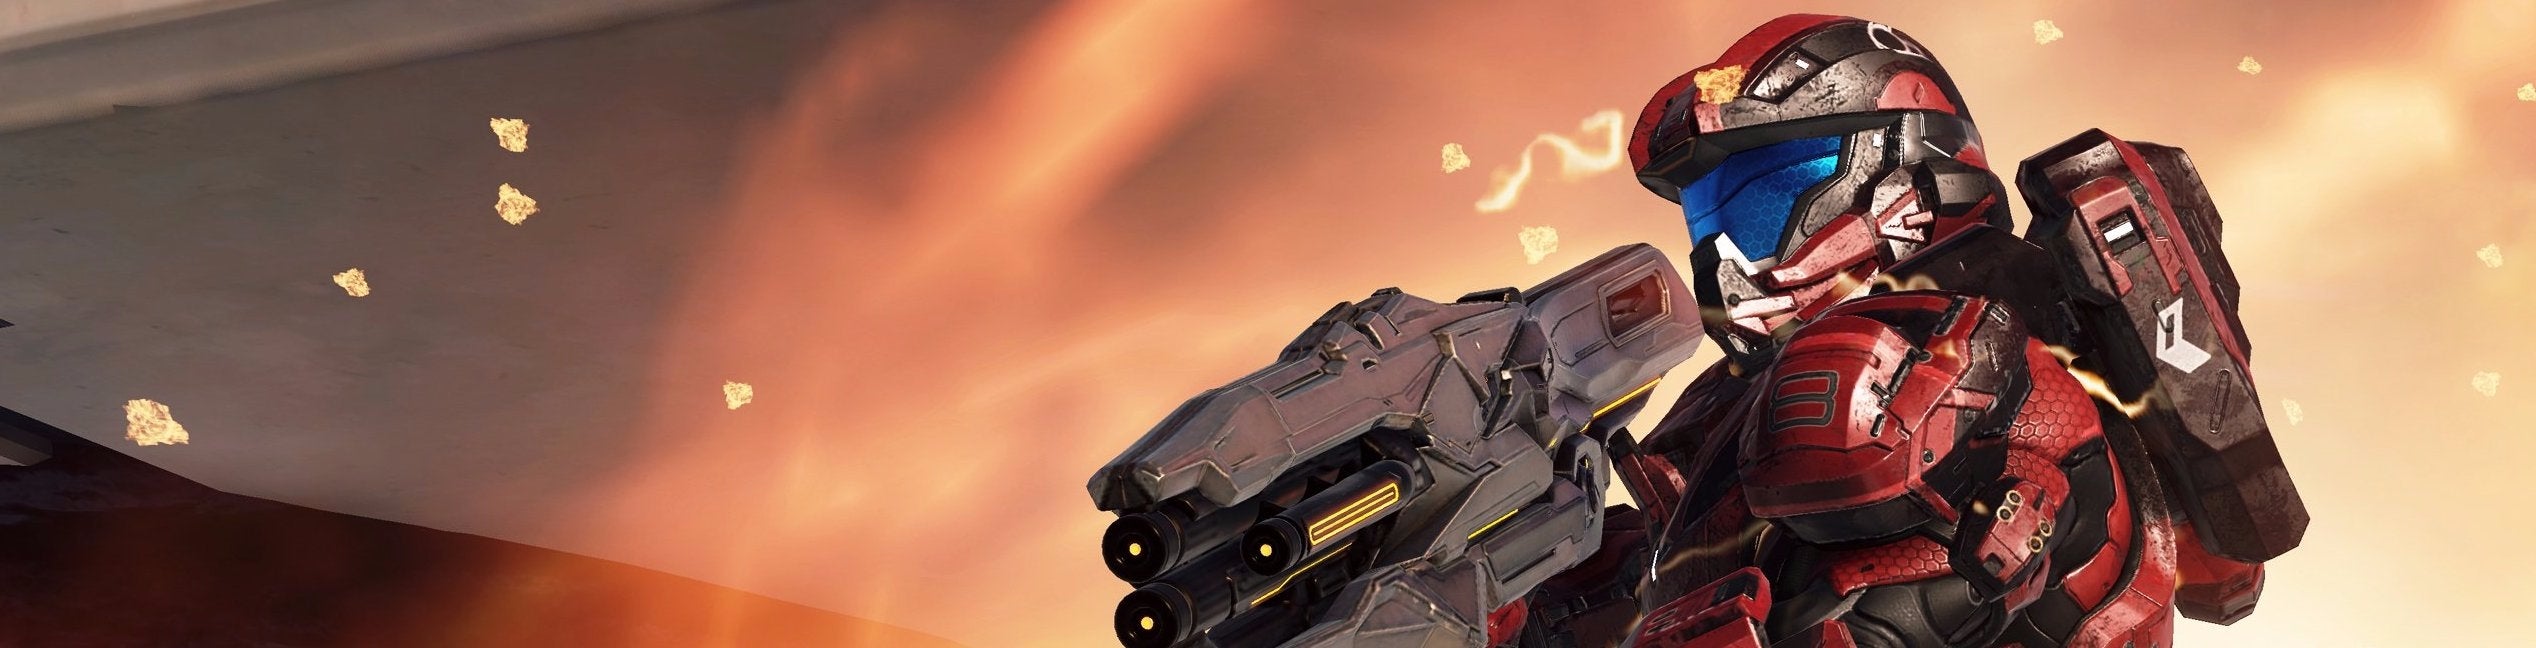 Afbeeldingen van Halo 5: Guardians multiplayer review